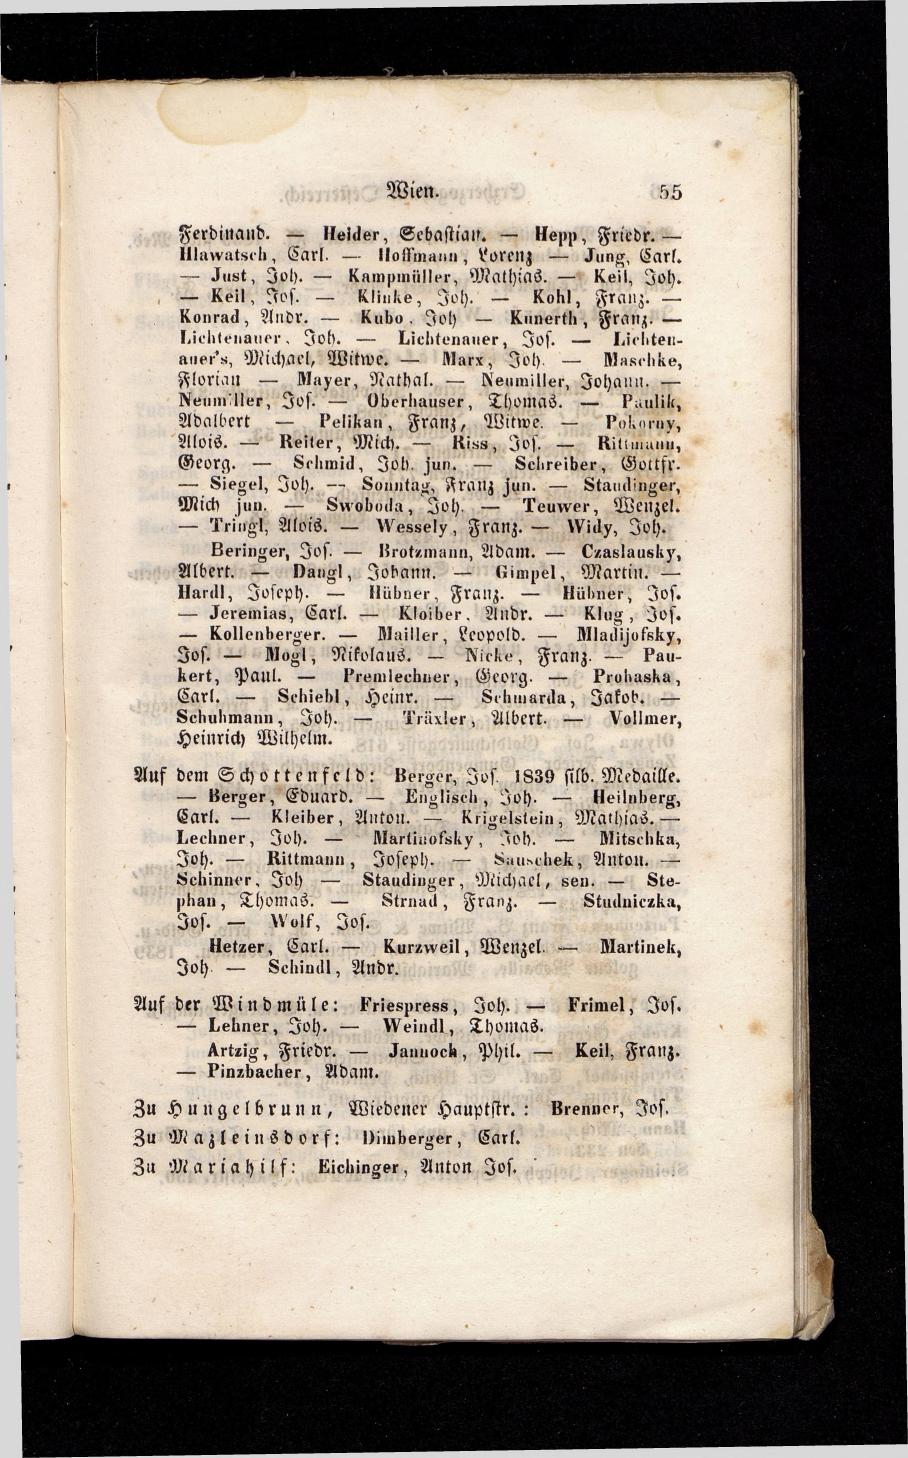 Grosses Adressbuch der Kaufleute. No. 13. Oesterreich ober u. unter der Enns 1844 - Seite 59